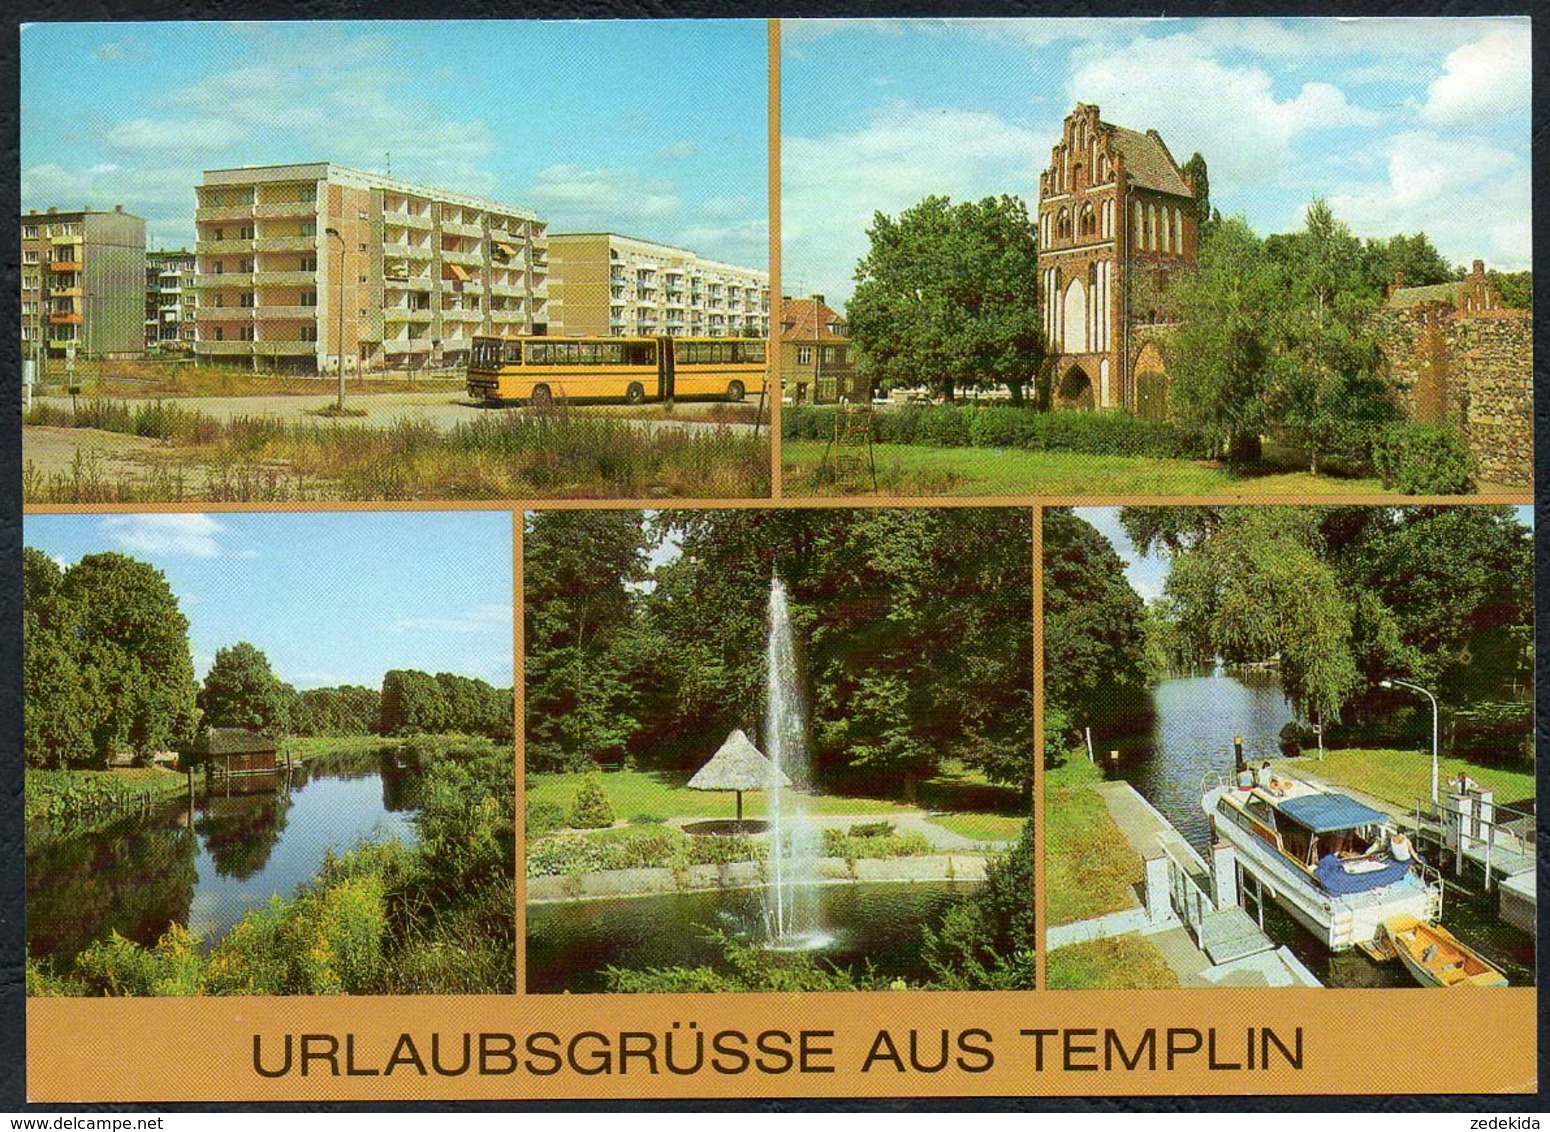 B9261 - TOP Templin - Bild Und Heimat Reichenbach Verlag DDR - Templin